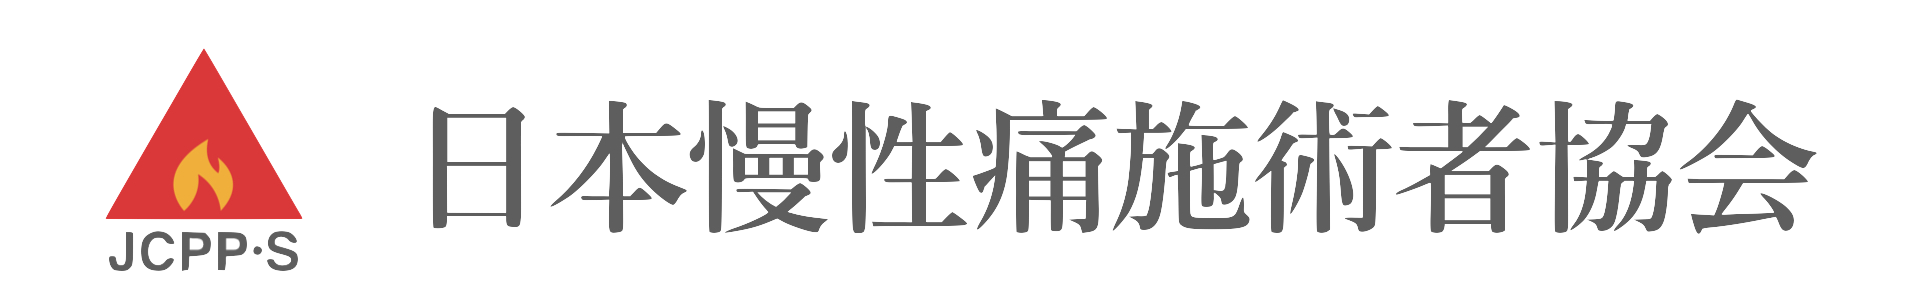 日本慢性痛施術者協会